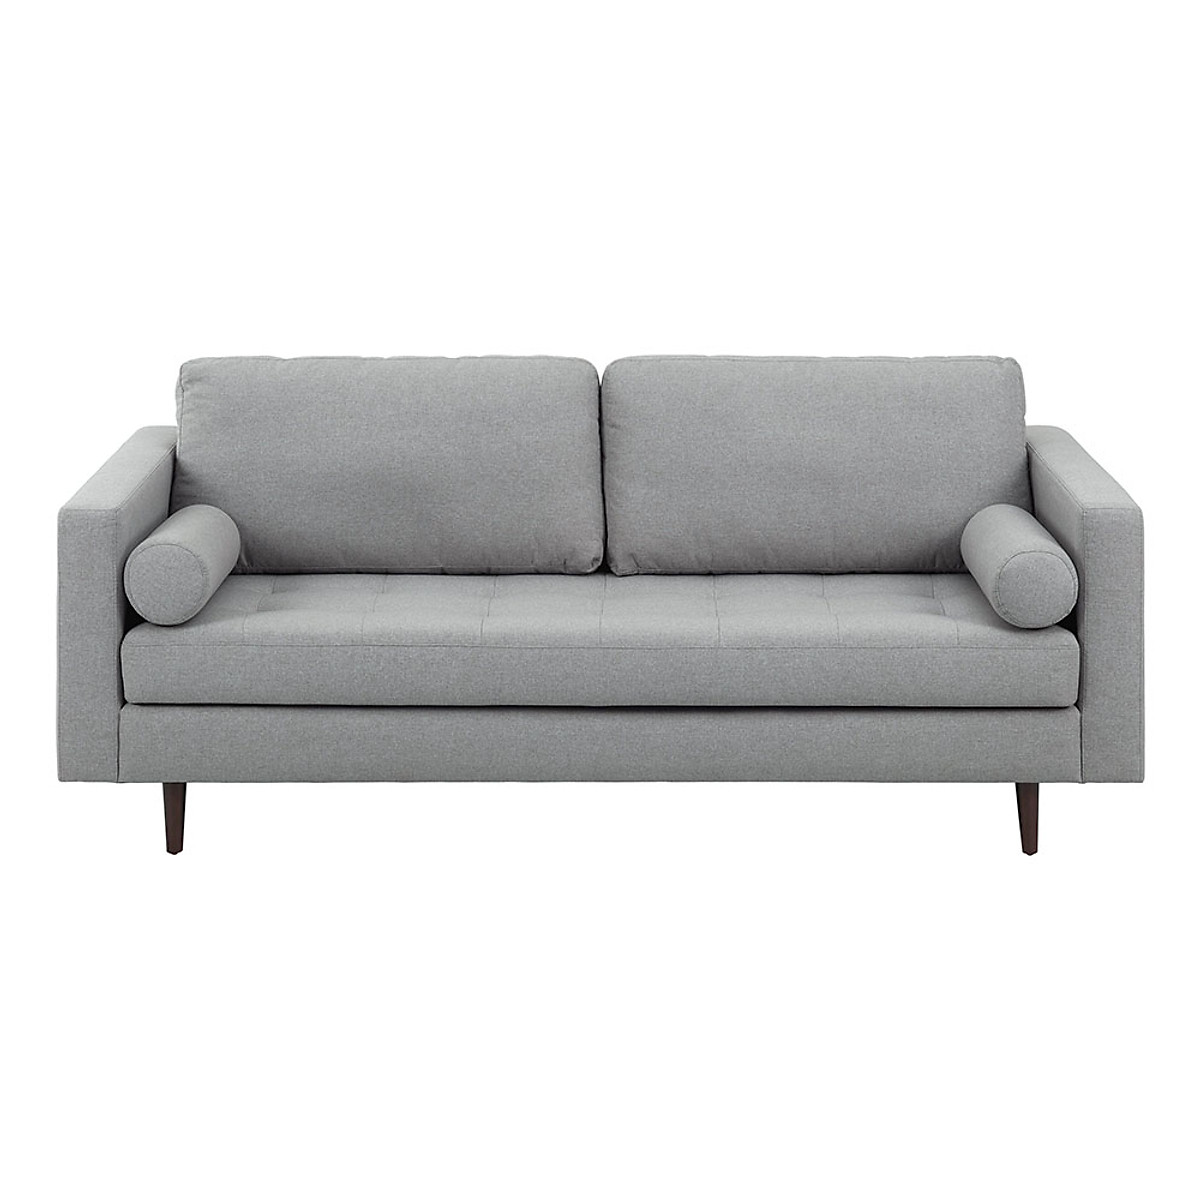 Sofa băng Nolan - 1m6